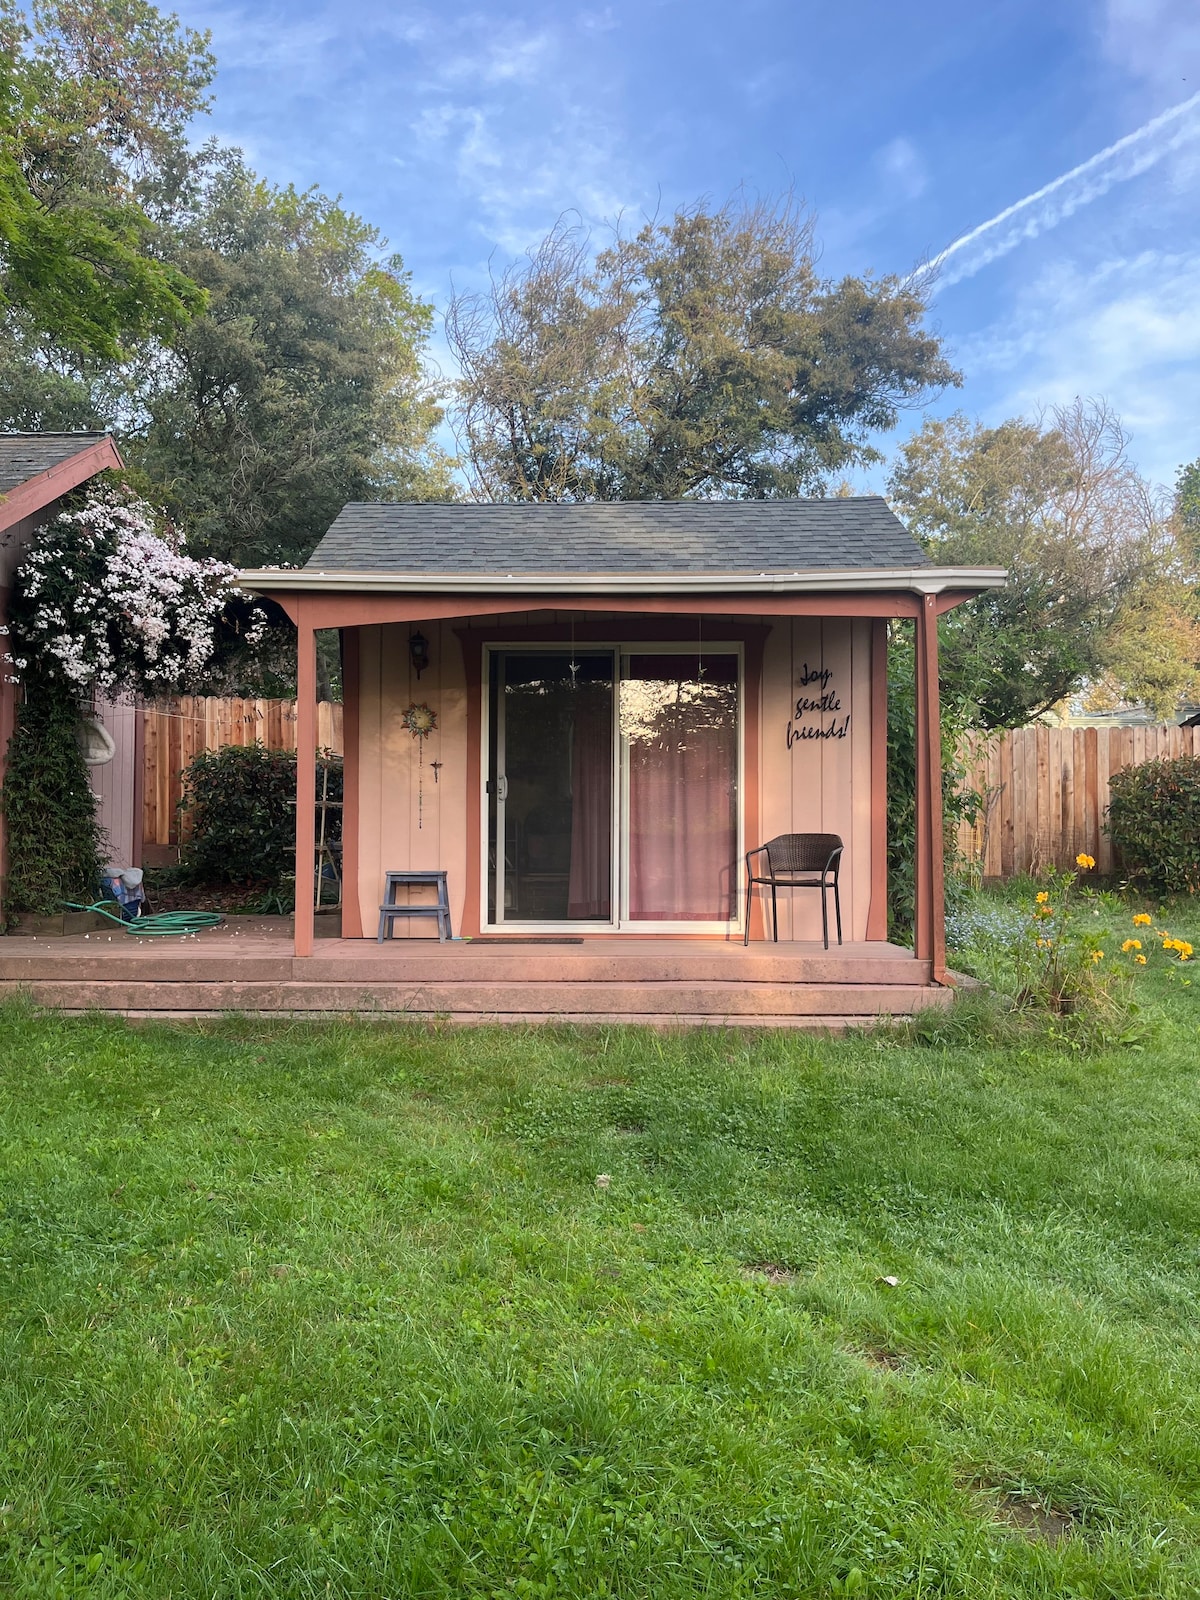 Fair Oaks安静的微型住宅花园小屋小屋